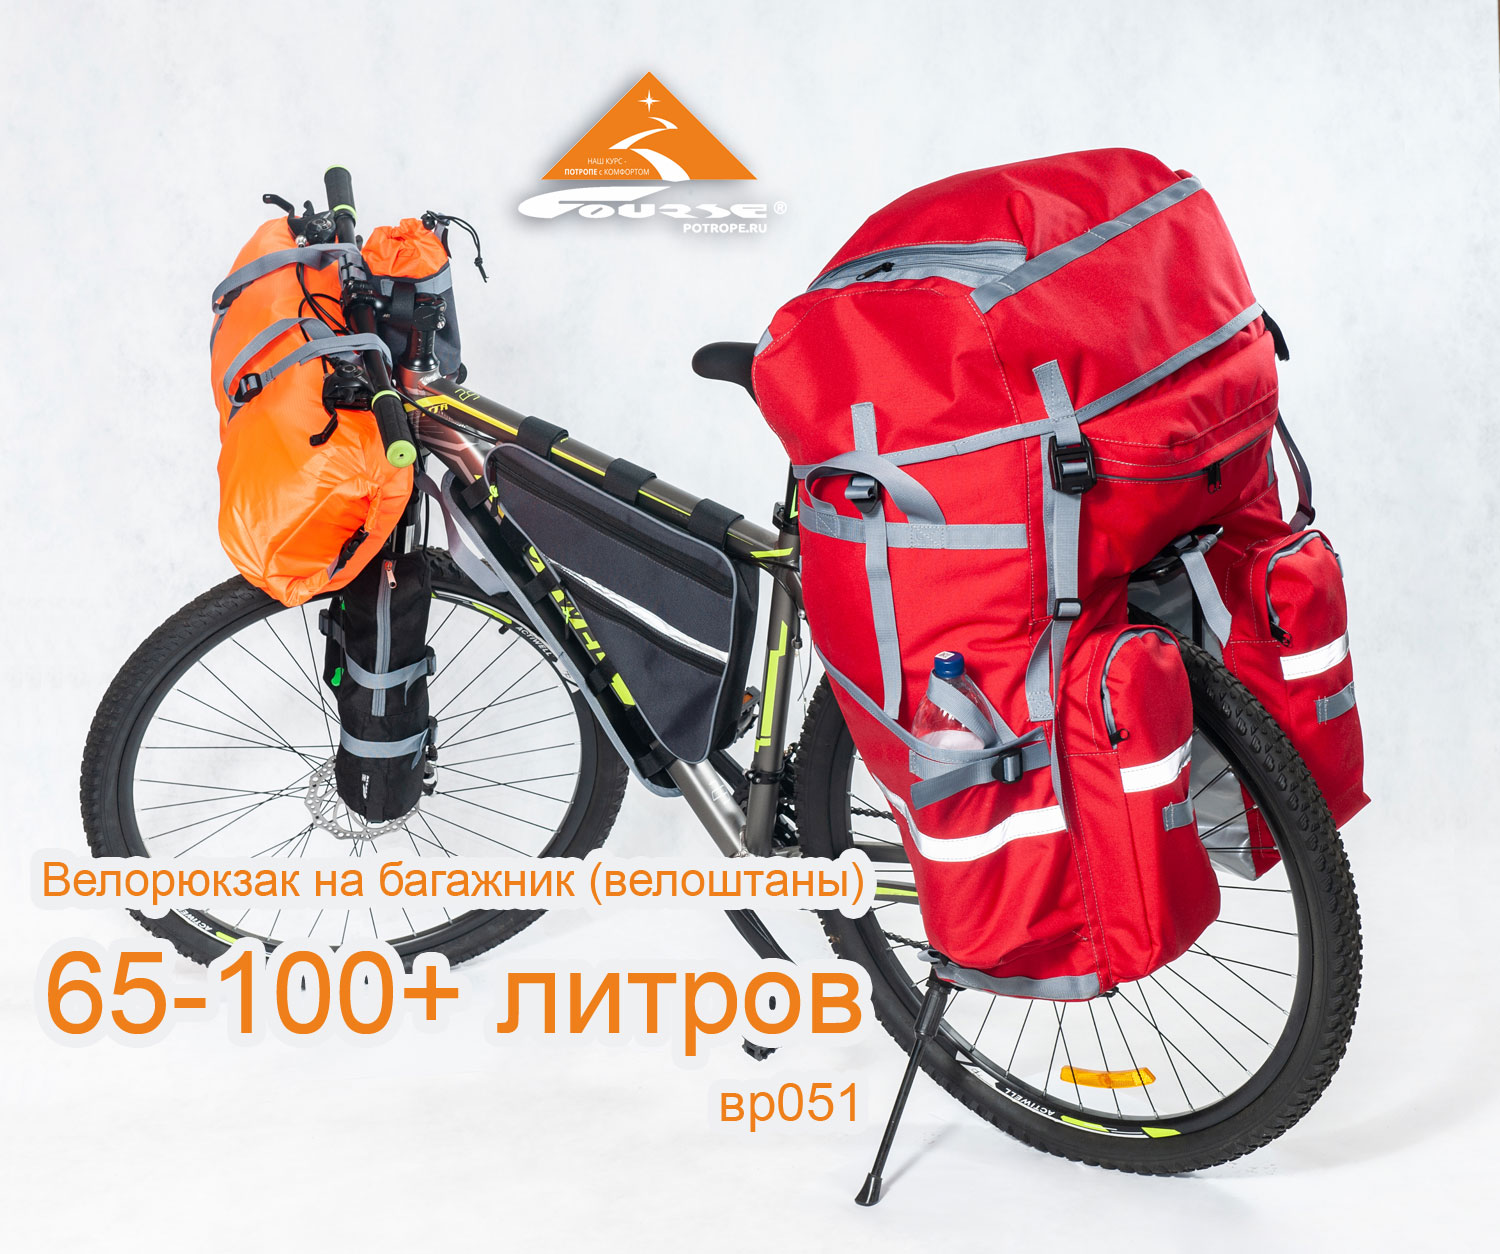 Велорюкзак на багажник (велоштаны) 65-100+ литров на велосипеде